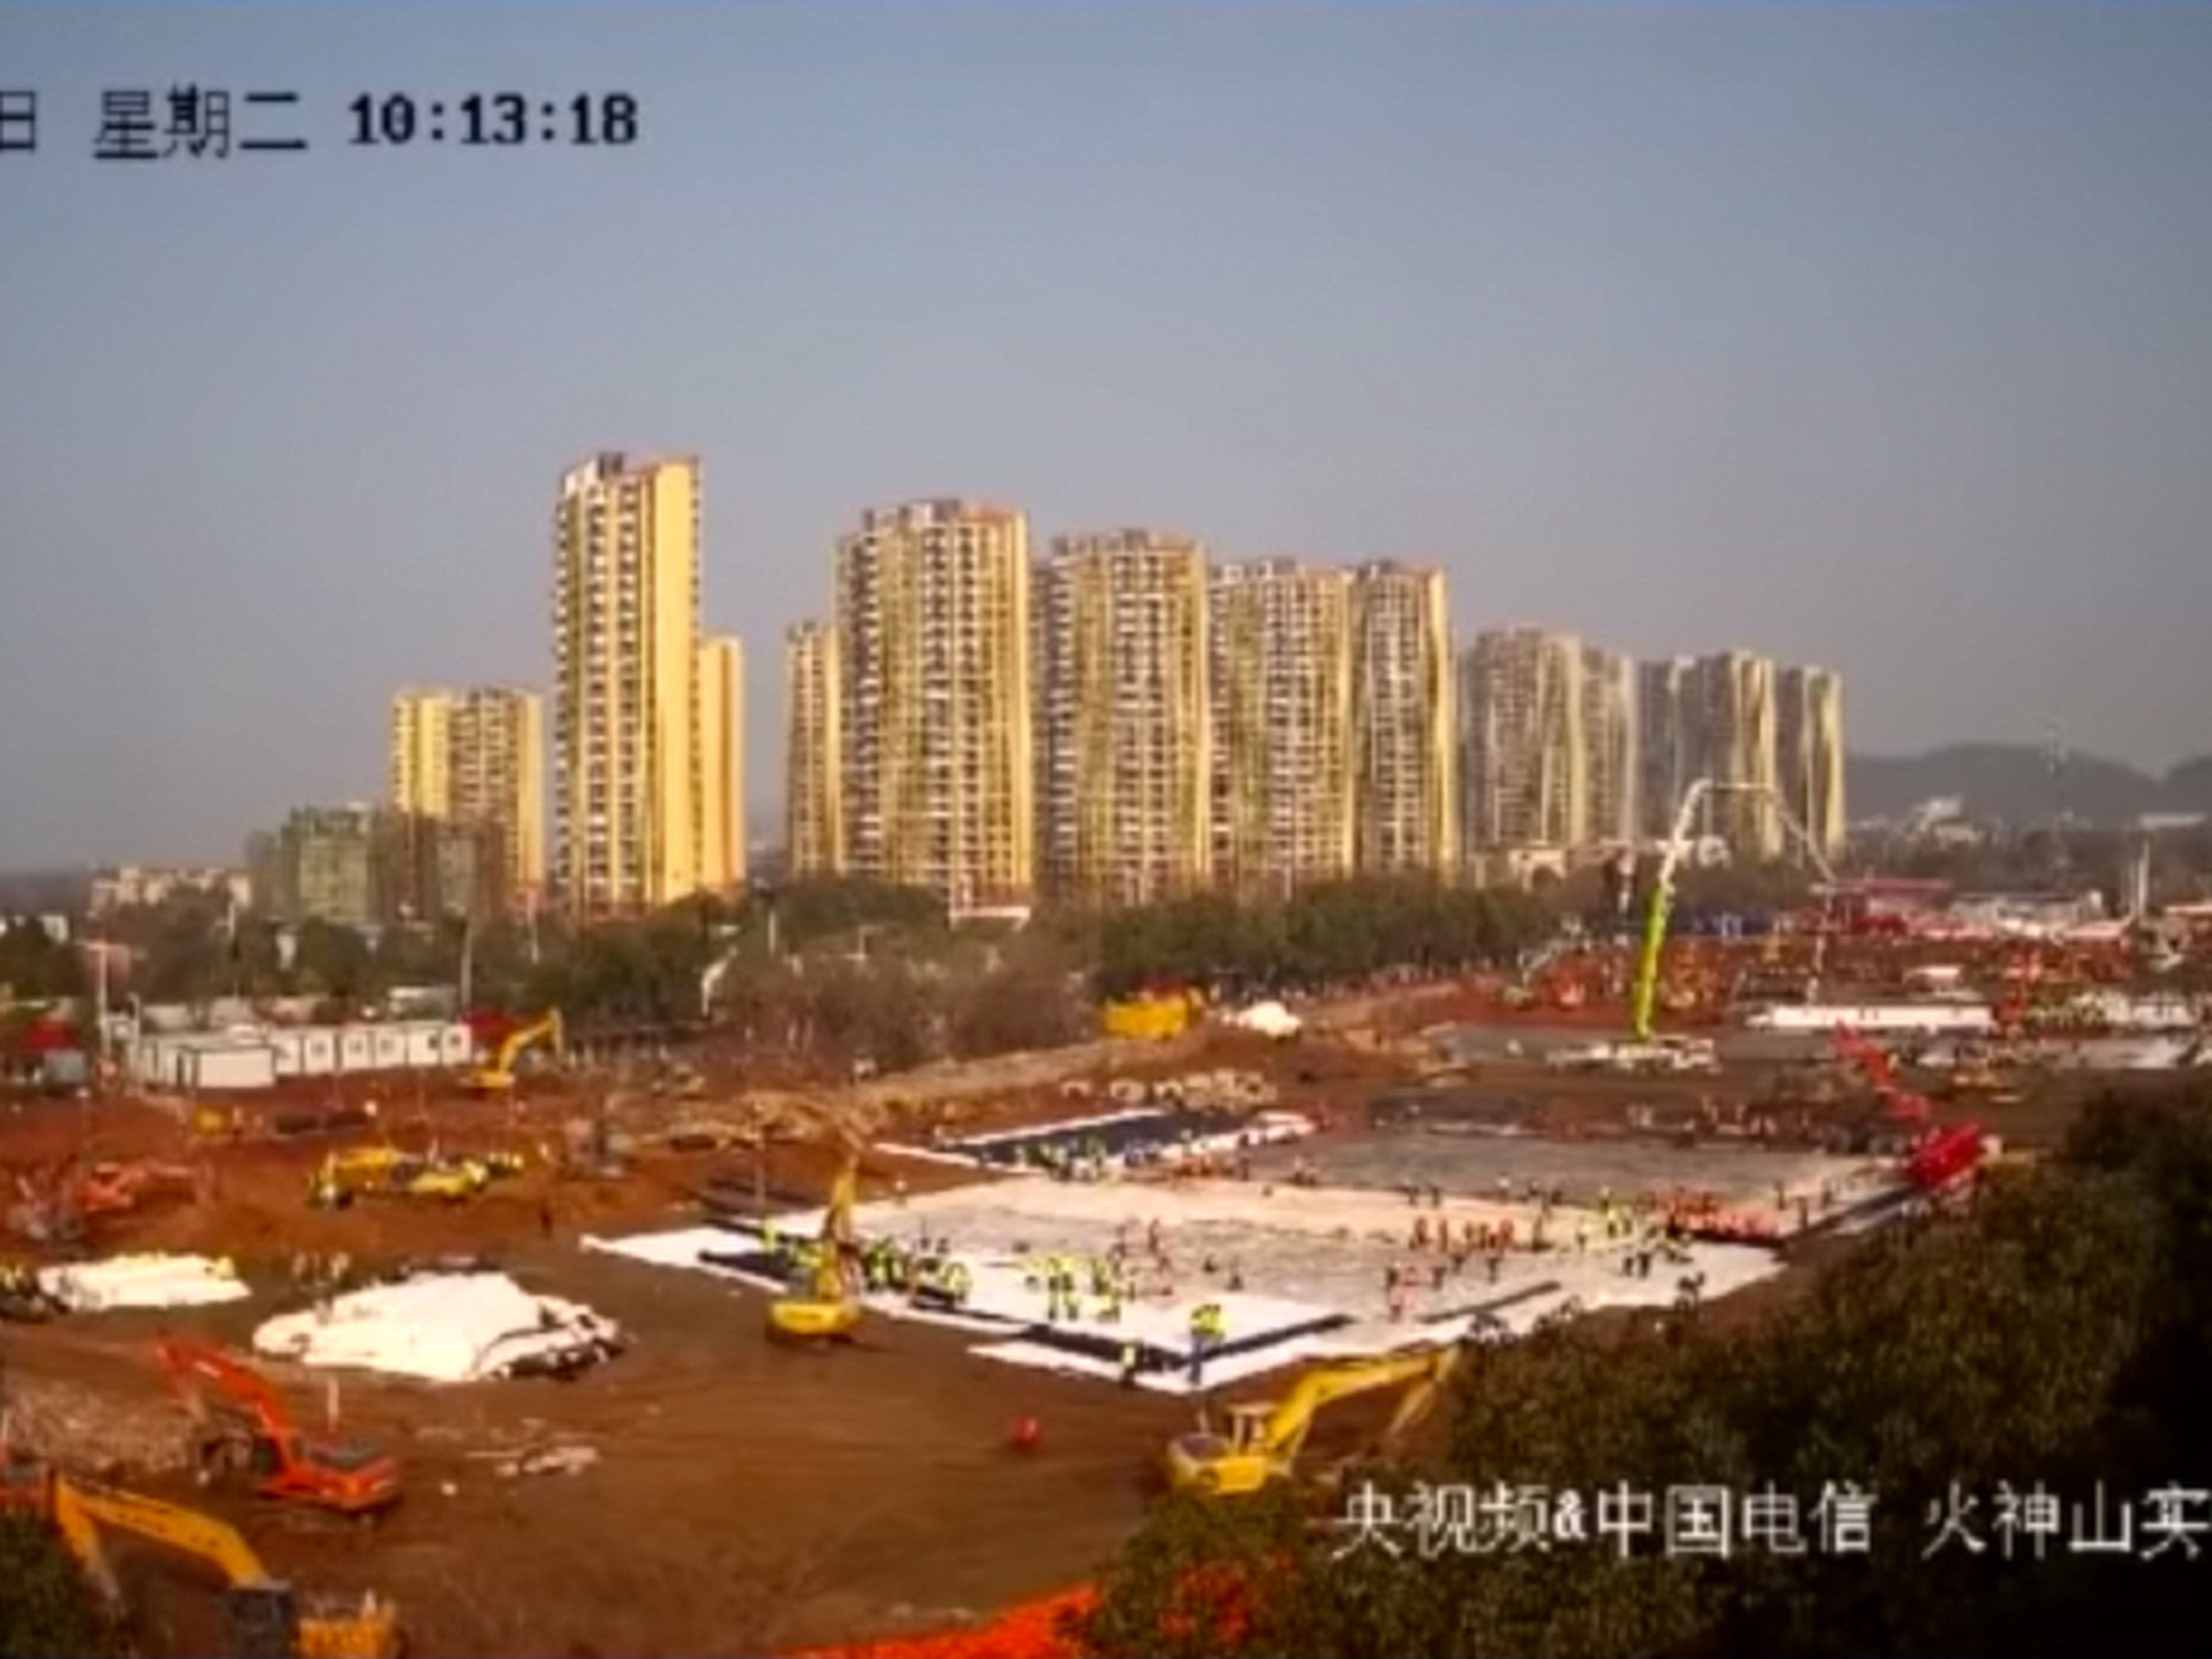 Una imagen de la webcam que mostraba los trabajos de construcción de los dos nuevos hospitales de Wuhan.